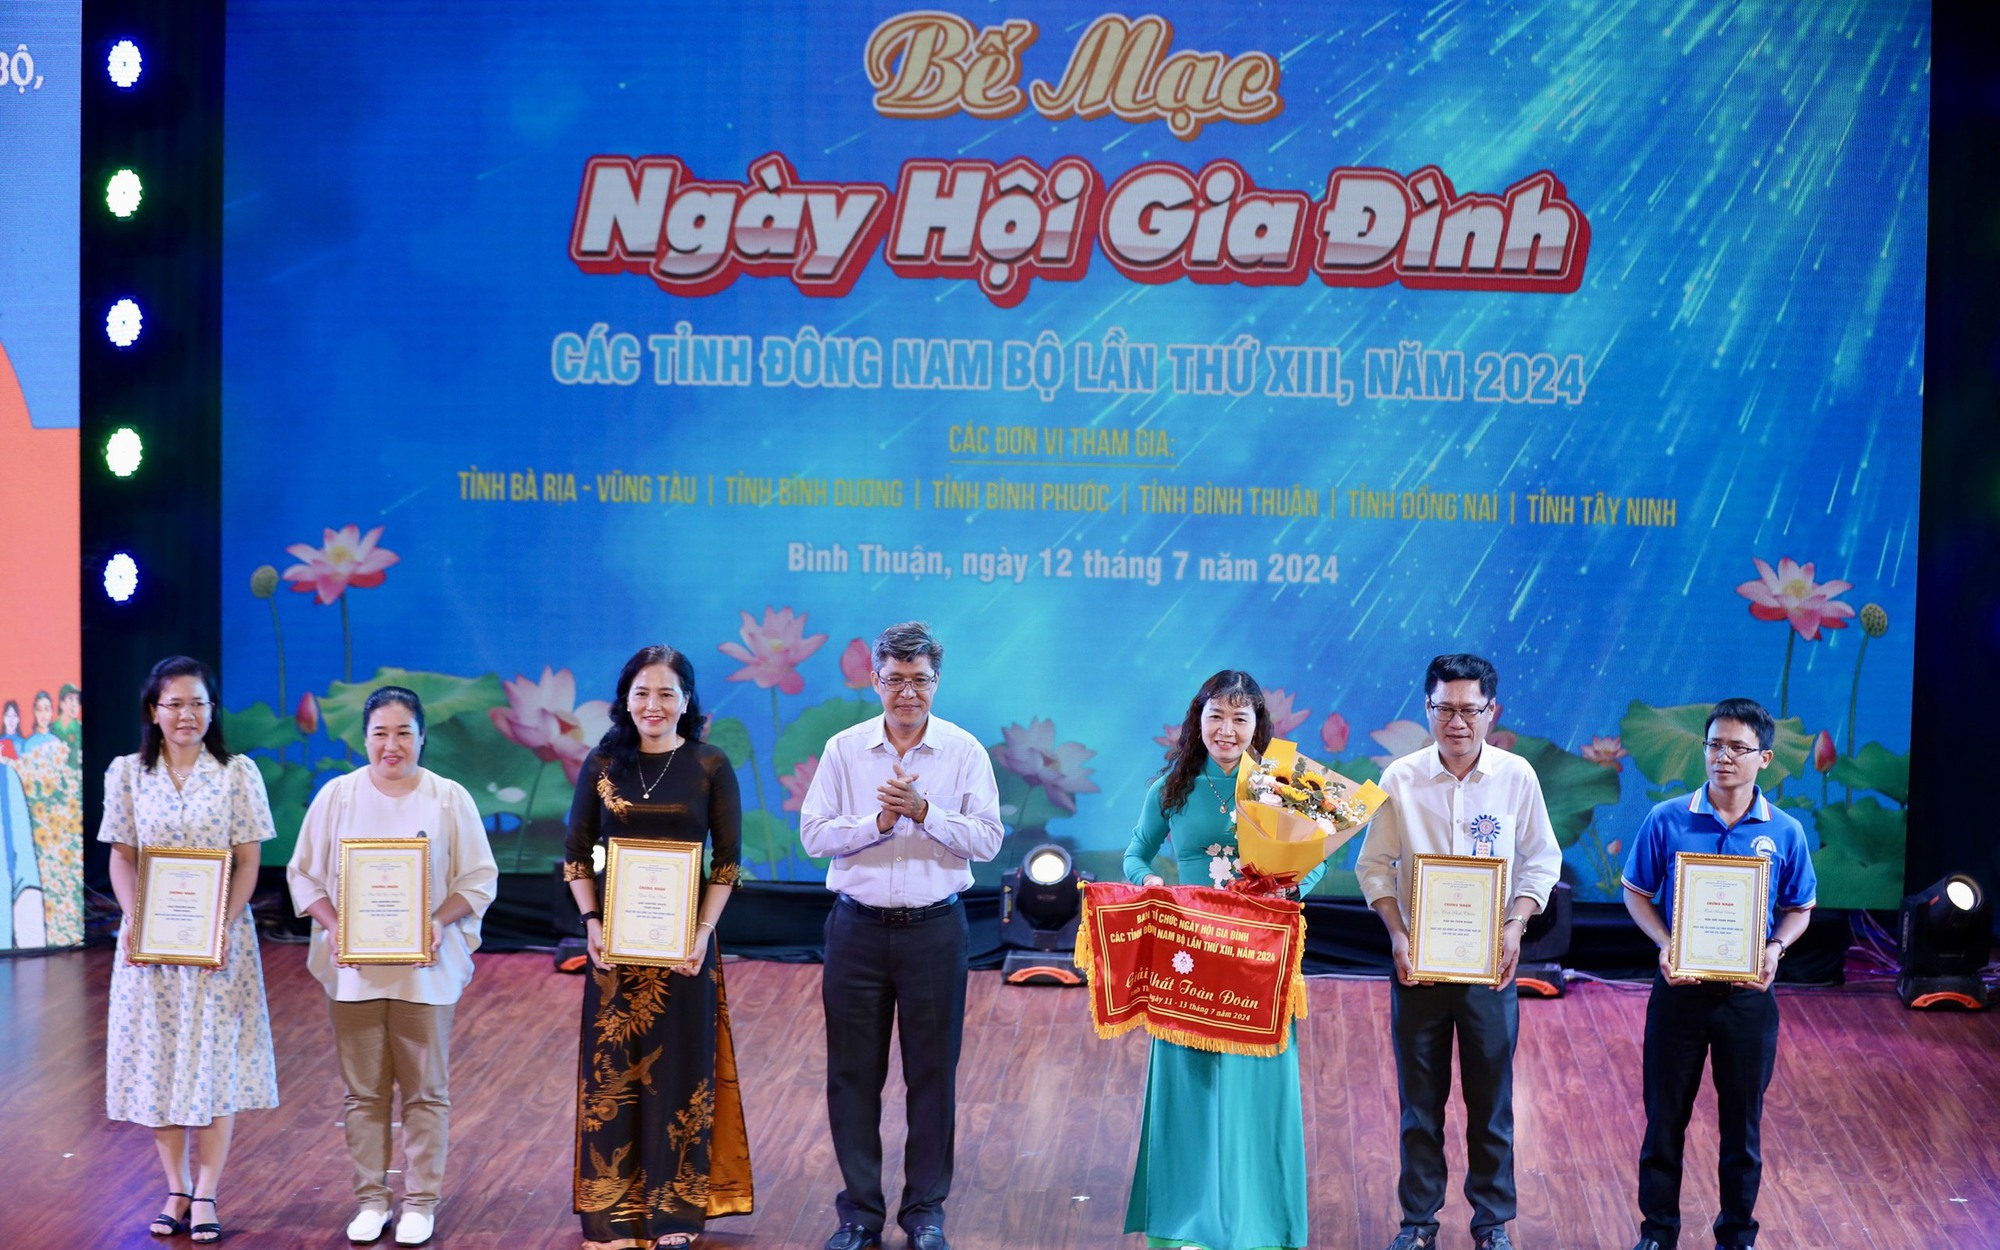 Bế mạc và trao giải Ngày hội gia đình các tỉnh Đông Nam Bộ 